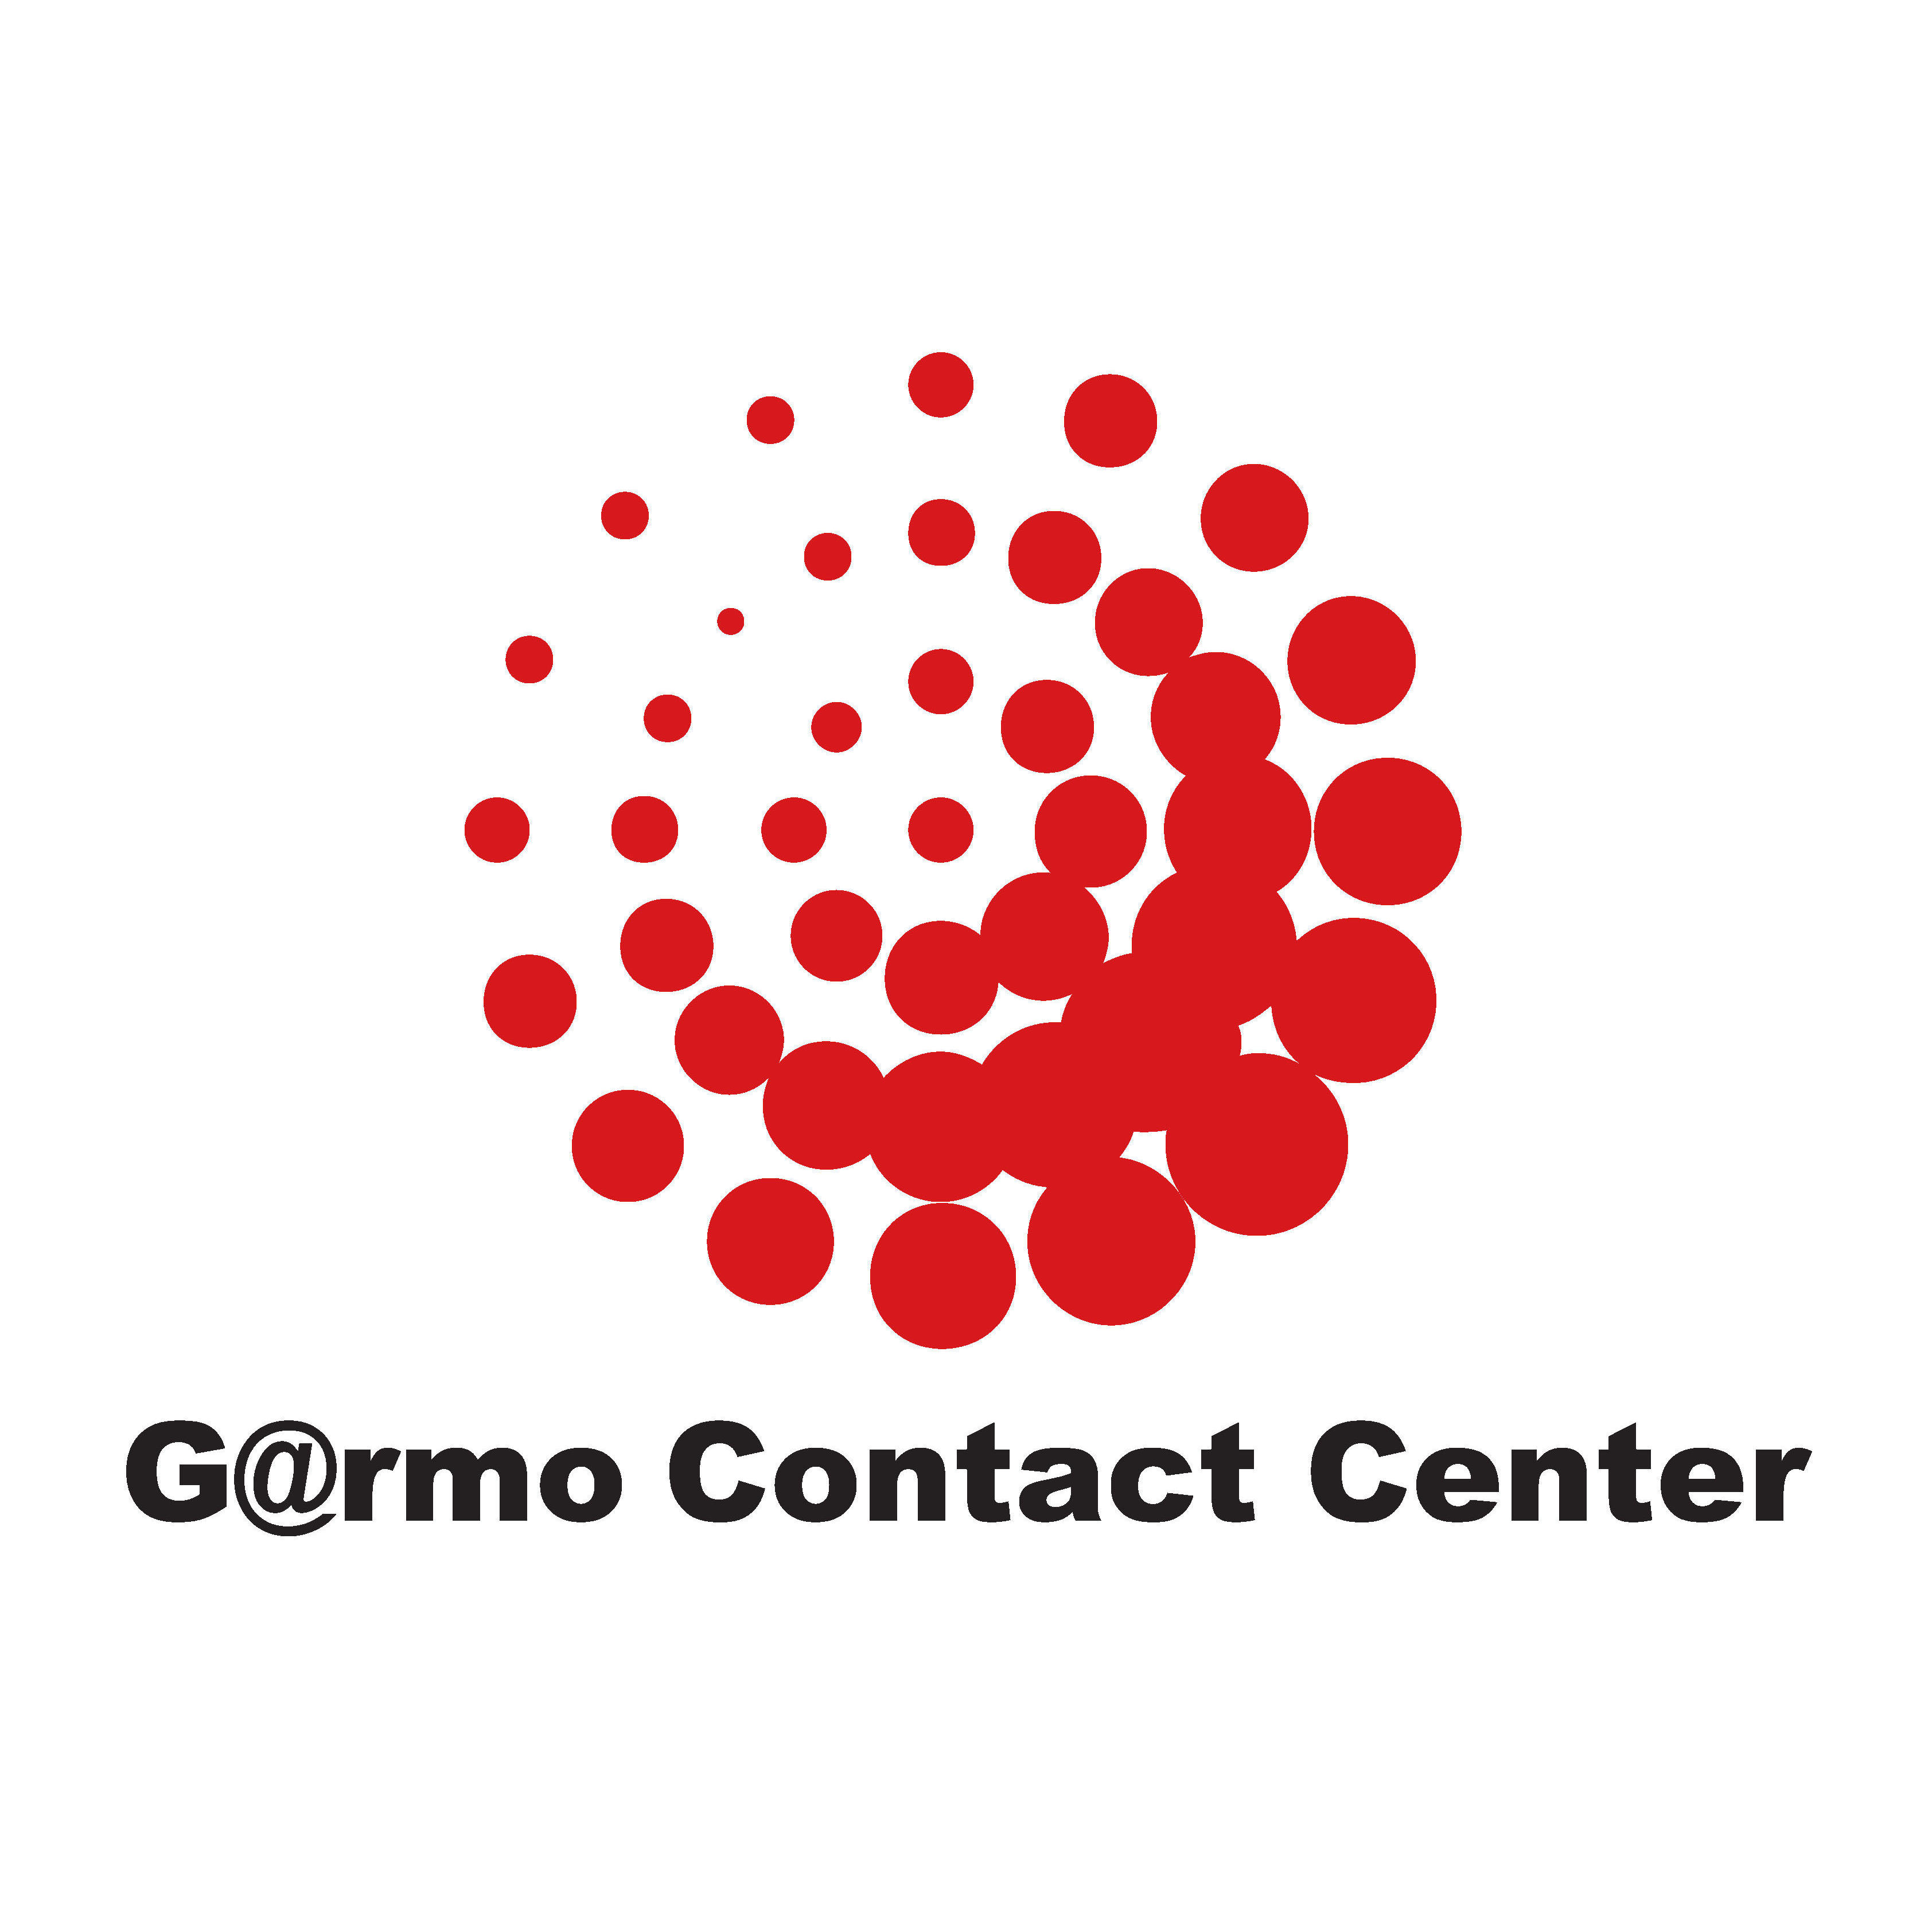 Garmo Contact Center Logo